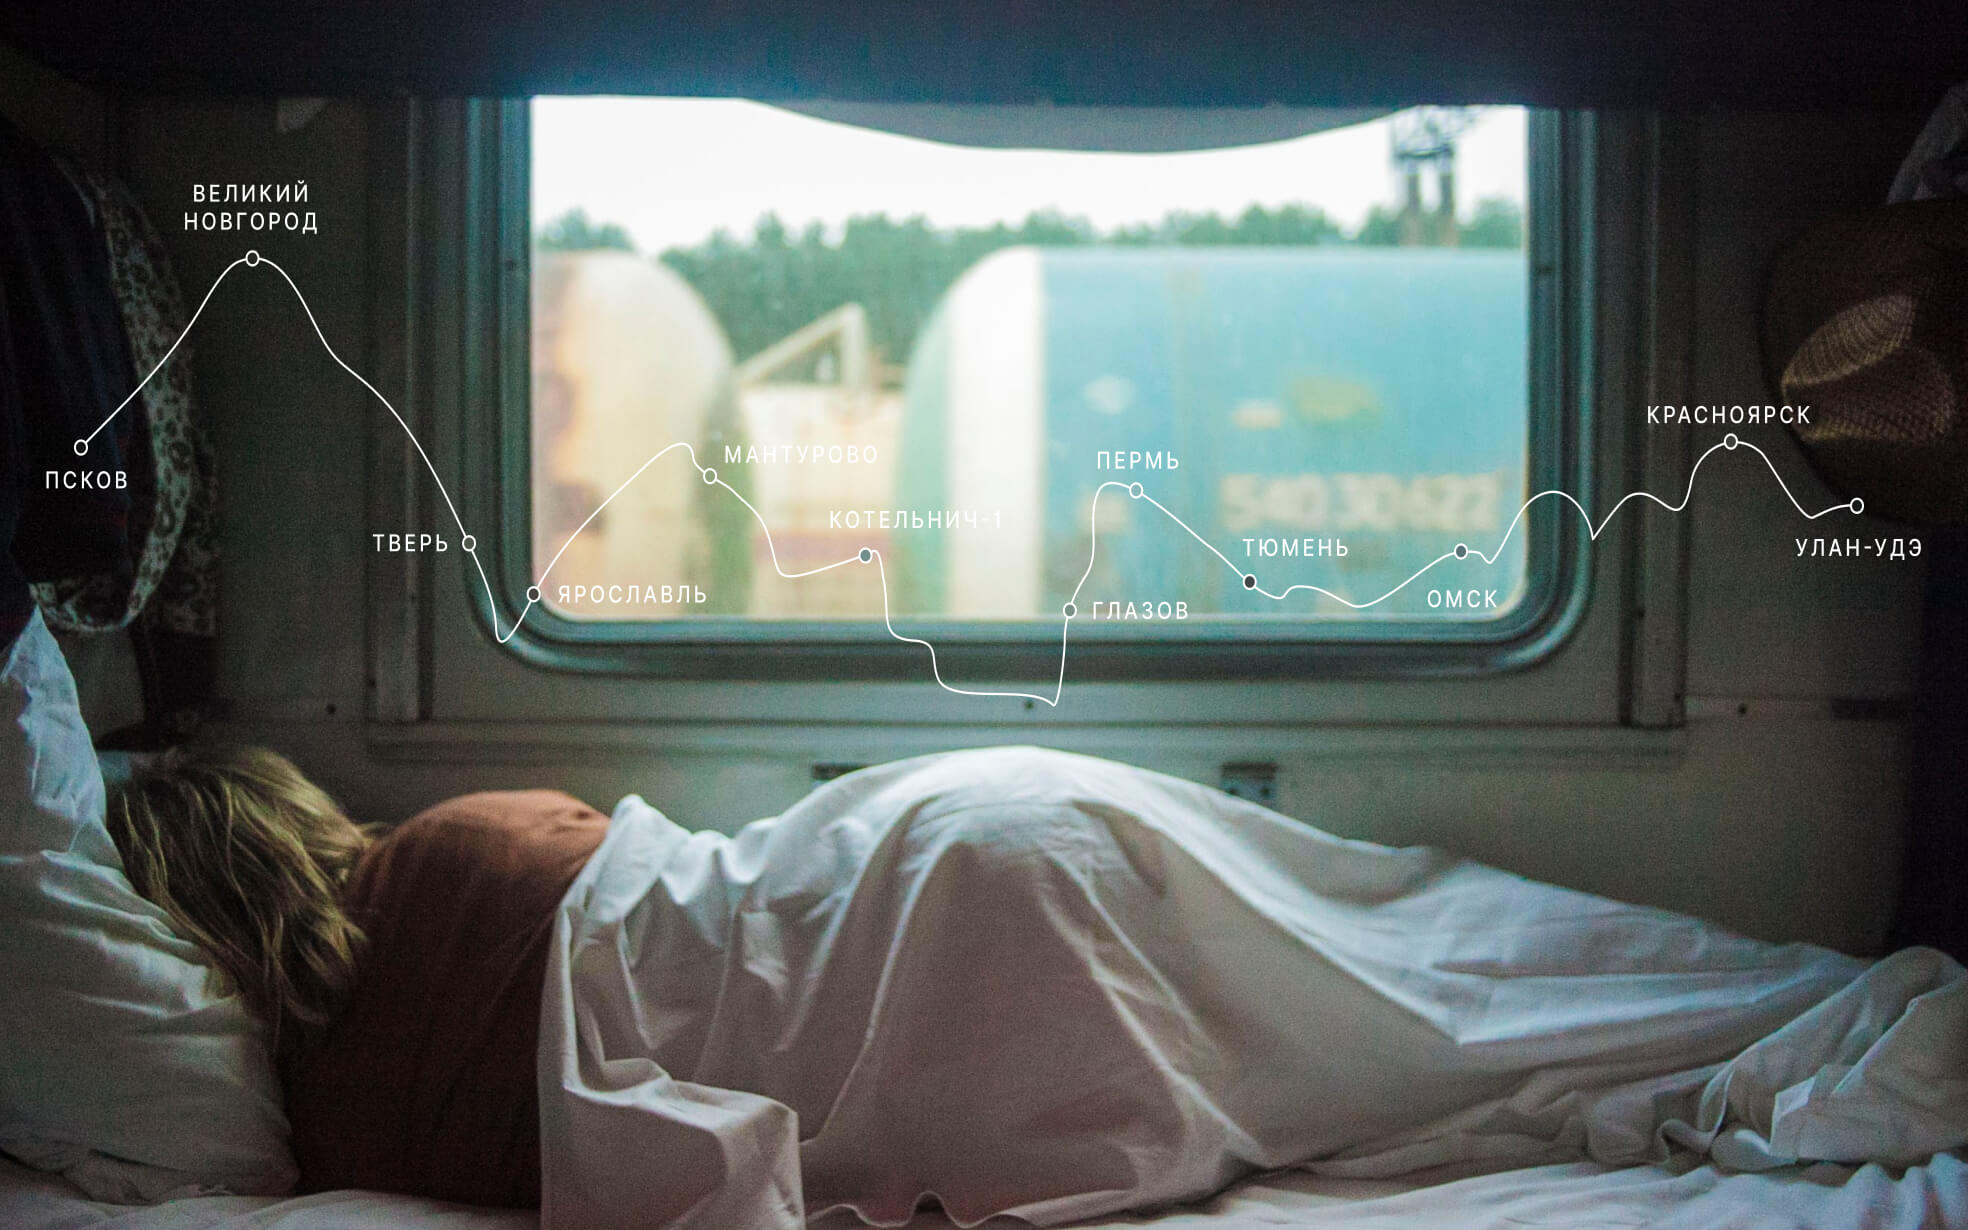 Спящая женщина в поезде. На переднем плане графика маршрута Псков-Улан-Удэ